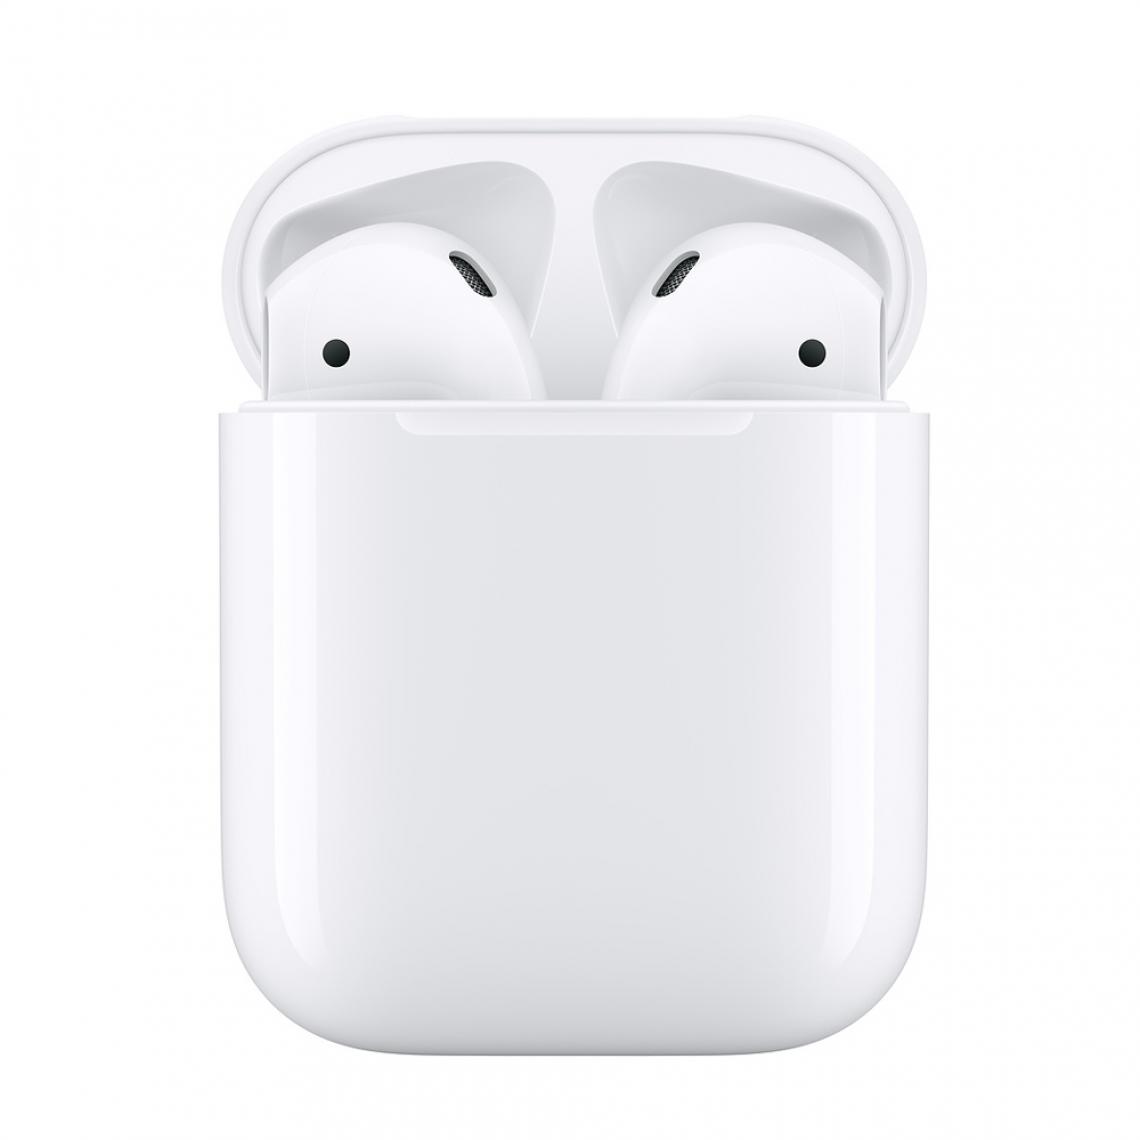 Generic - Apple AirPods 1 d'origine avec étui de charge casque sans fil Bluetooth pour écouteurs stéréo pour iPhone iPad Mac Apple Watch - Casque